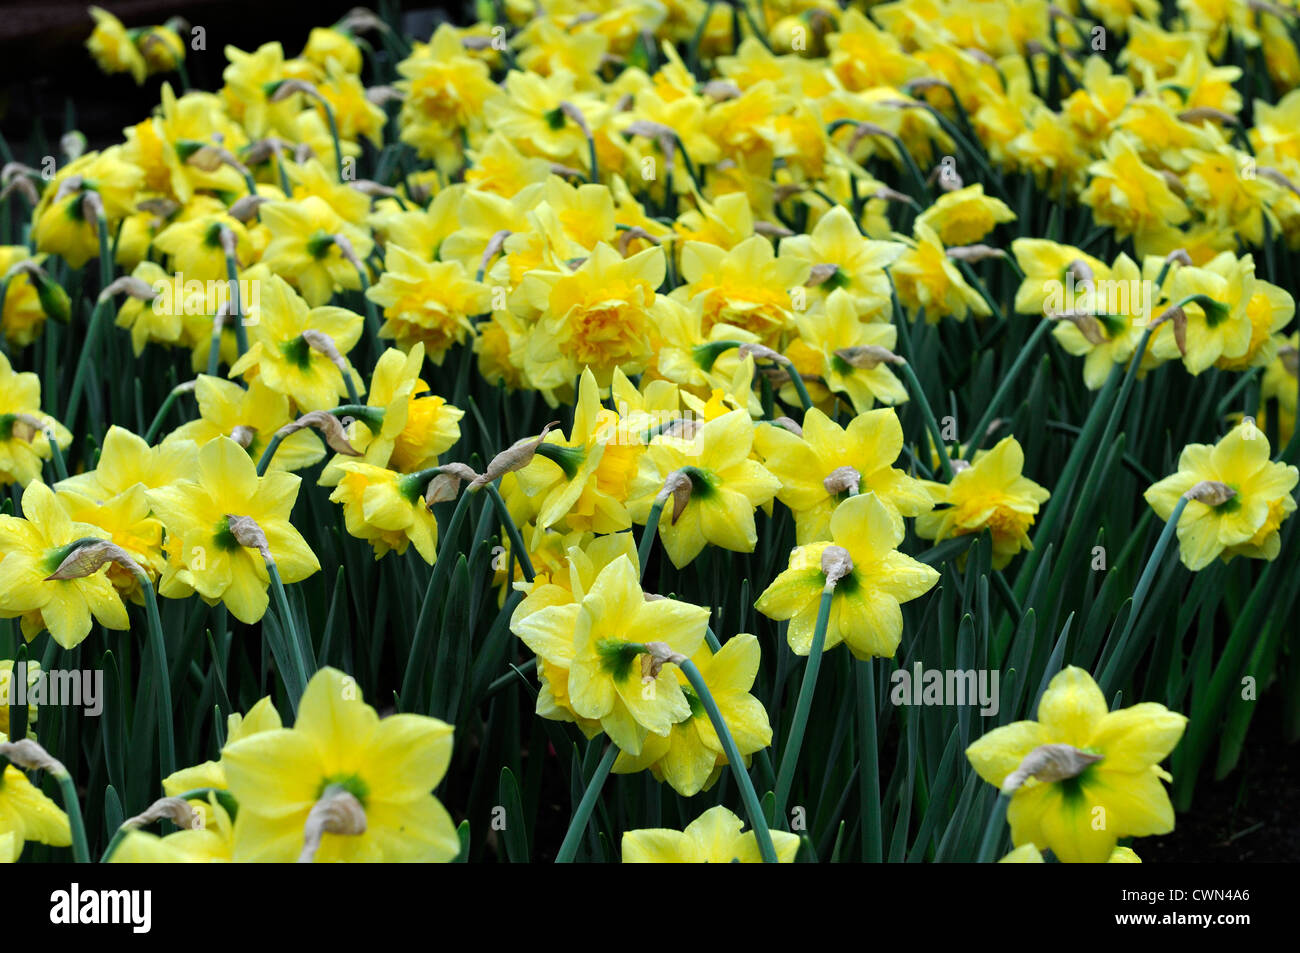 Narcissus dick wilden double jaune fleurs jonquille jonquilles narcisses  bulbes à fleurs de printemps fleur doublure ligne dérive Photo Stock - Alamy